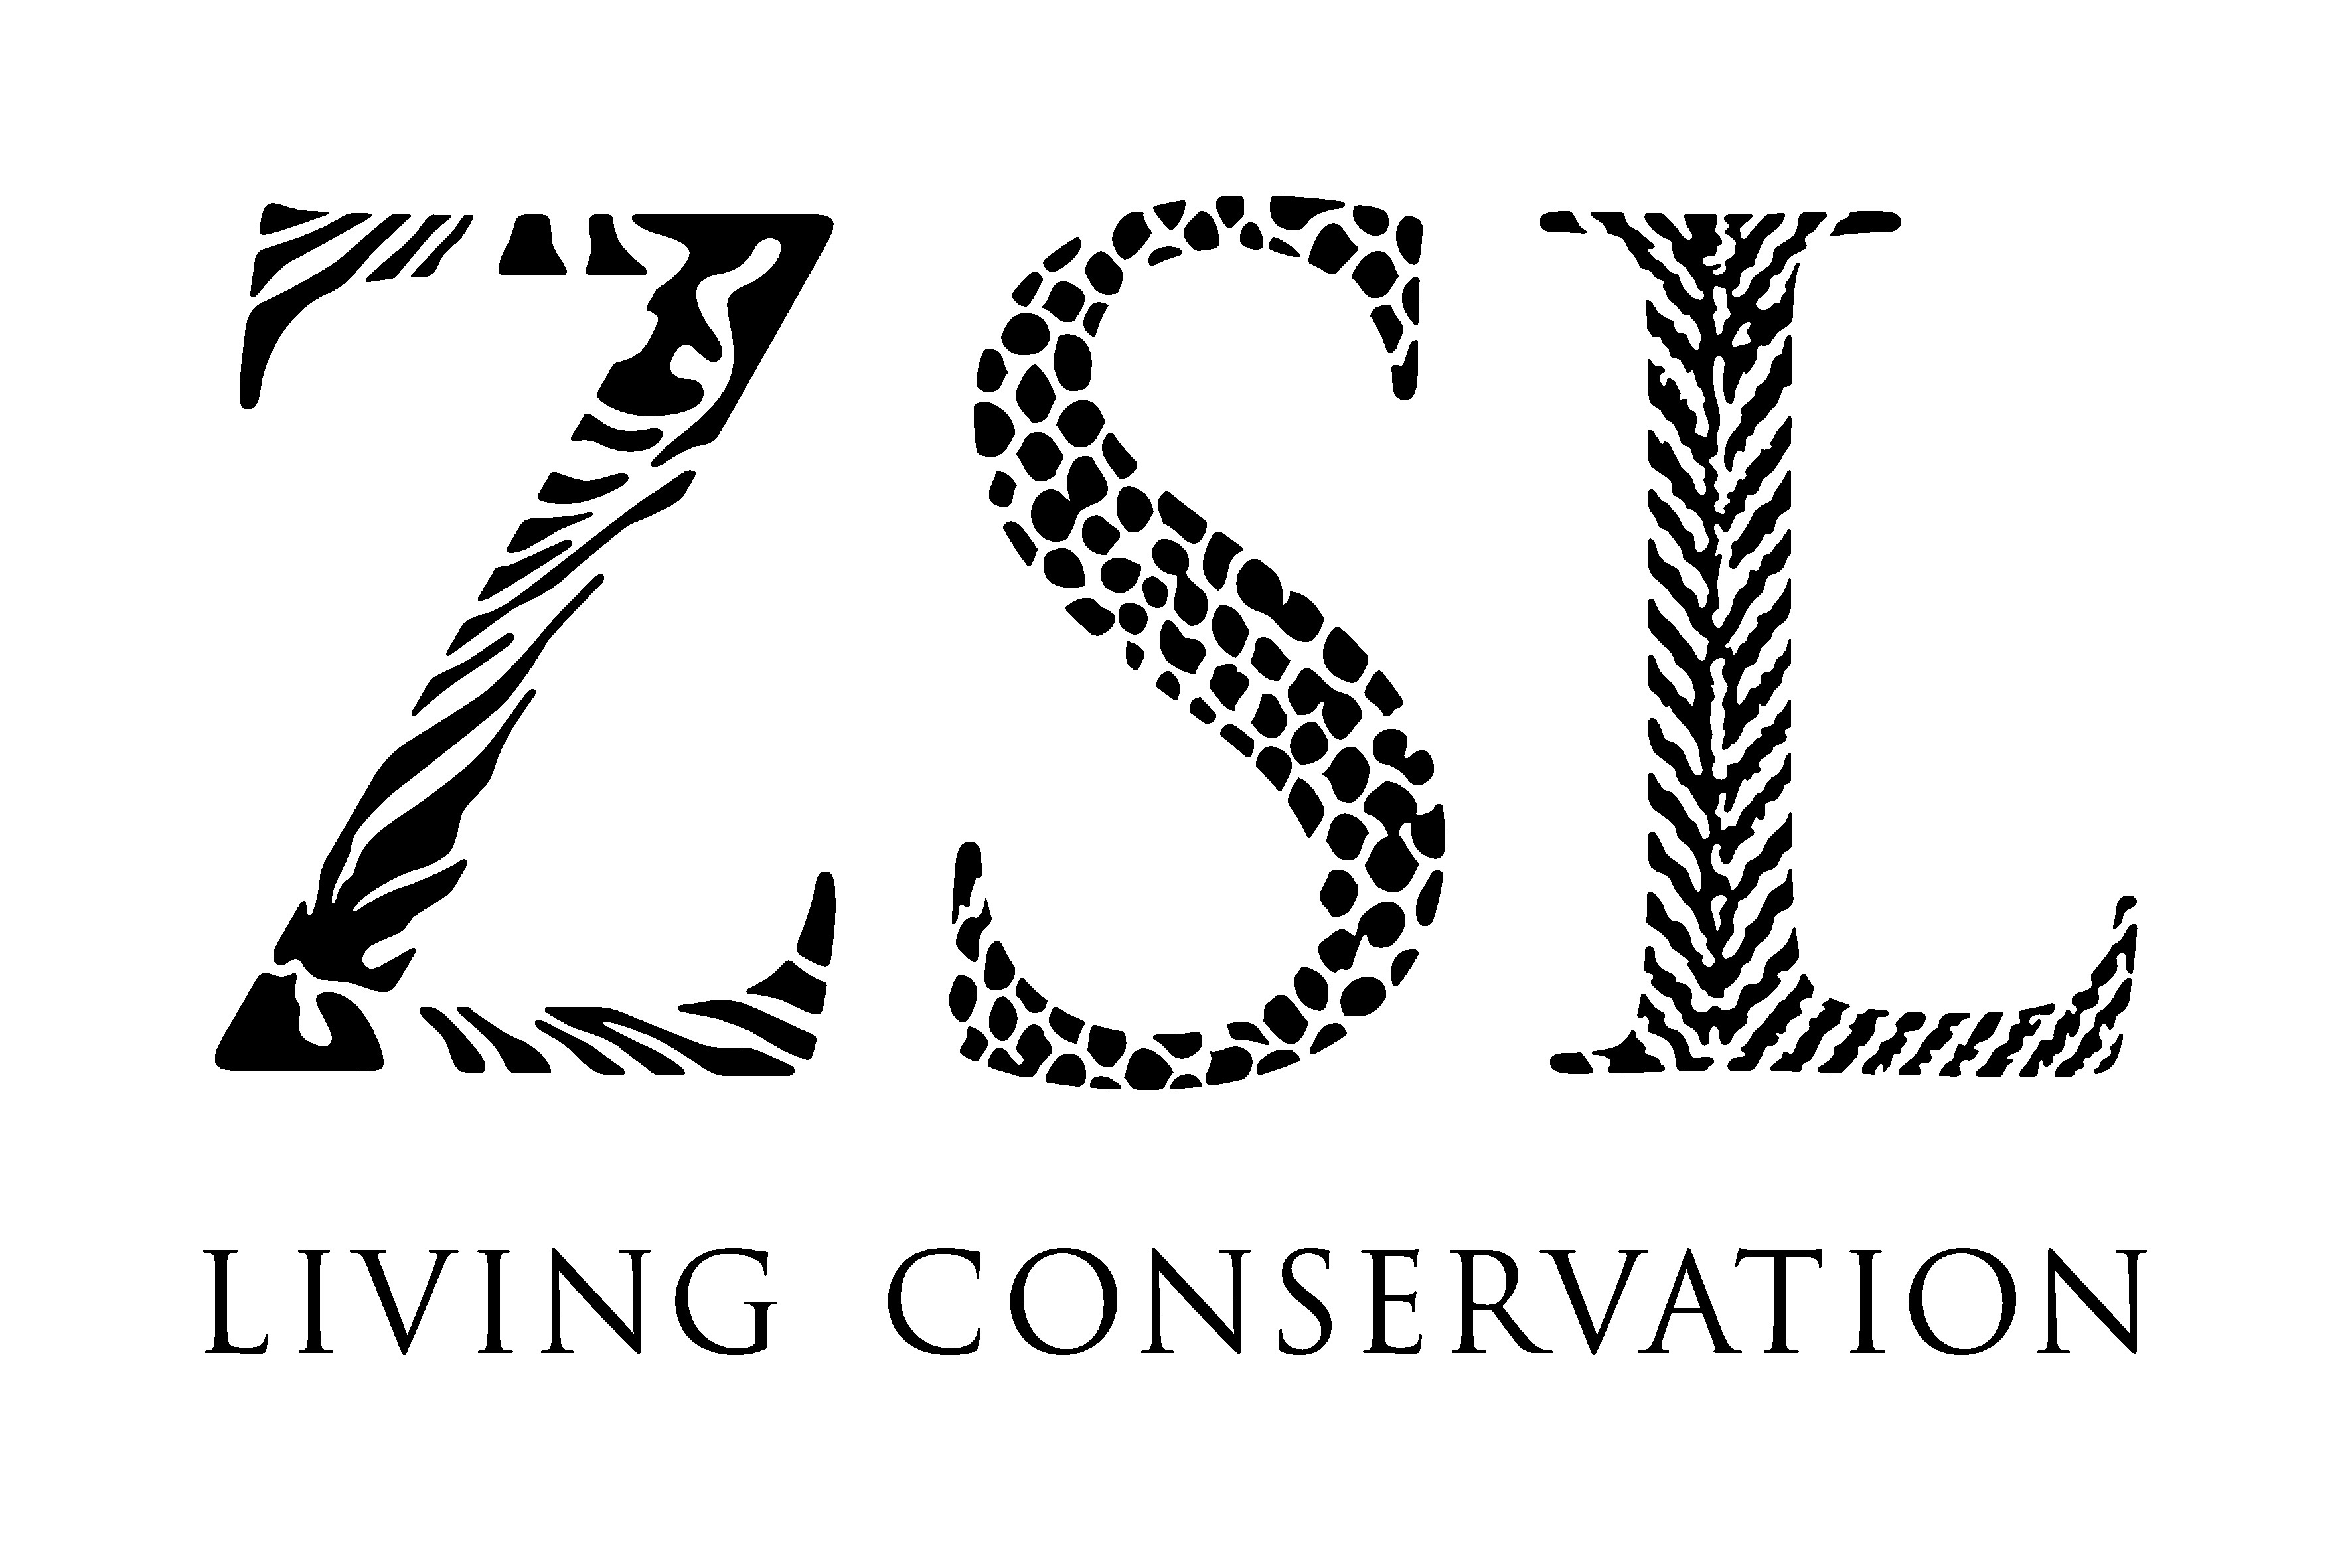 http://www.amphibians.org/wp-content/uploads/2013/11/ZSL-logo.jpg